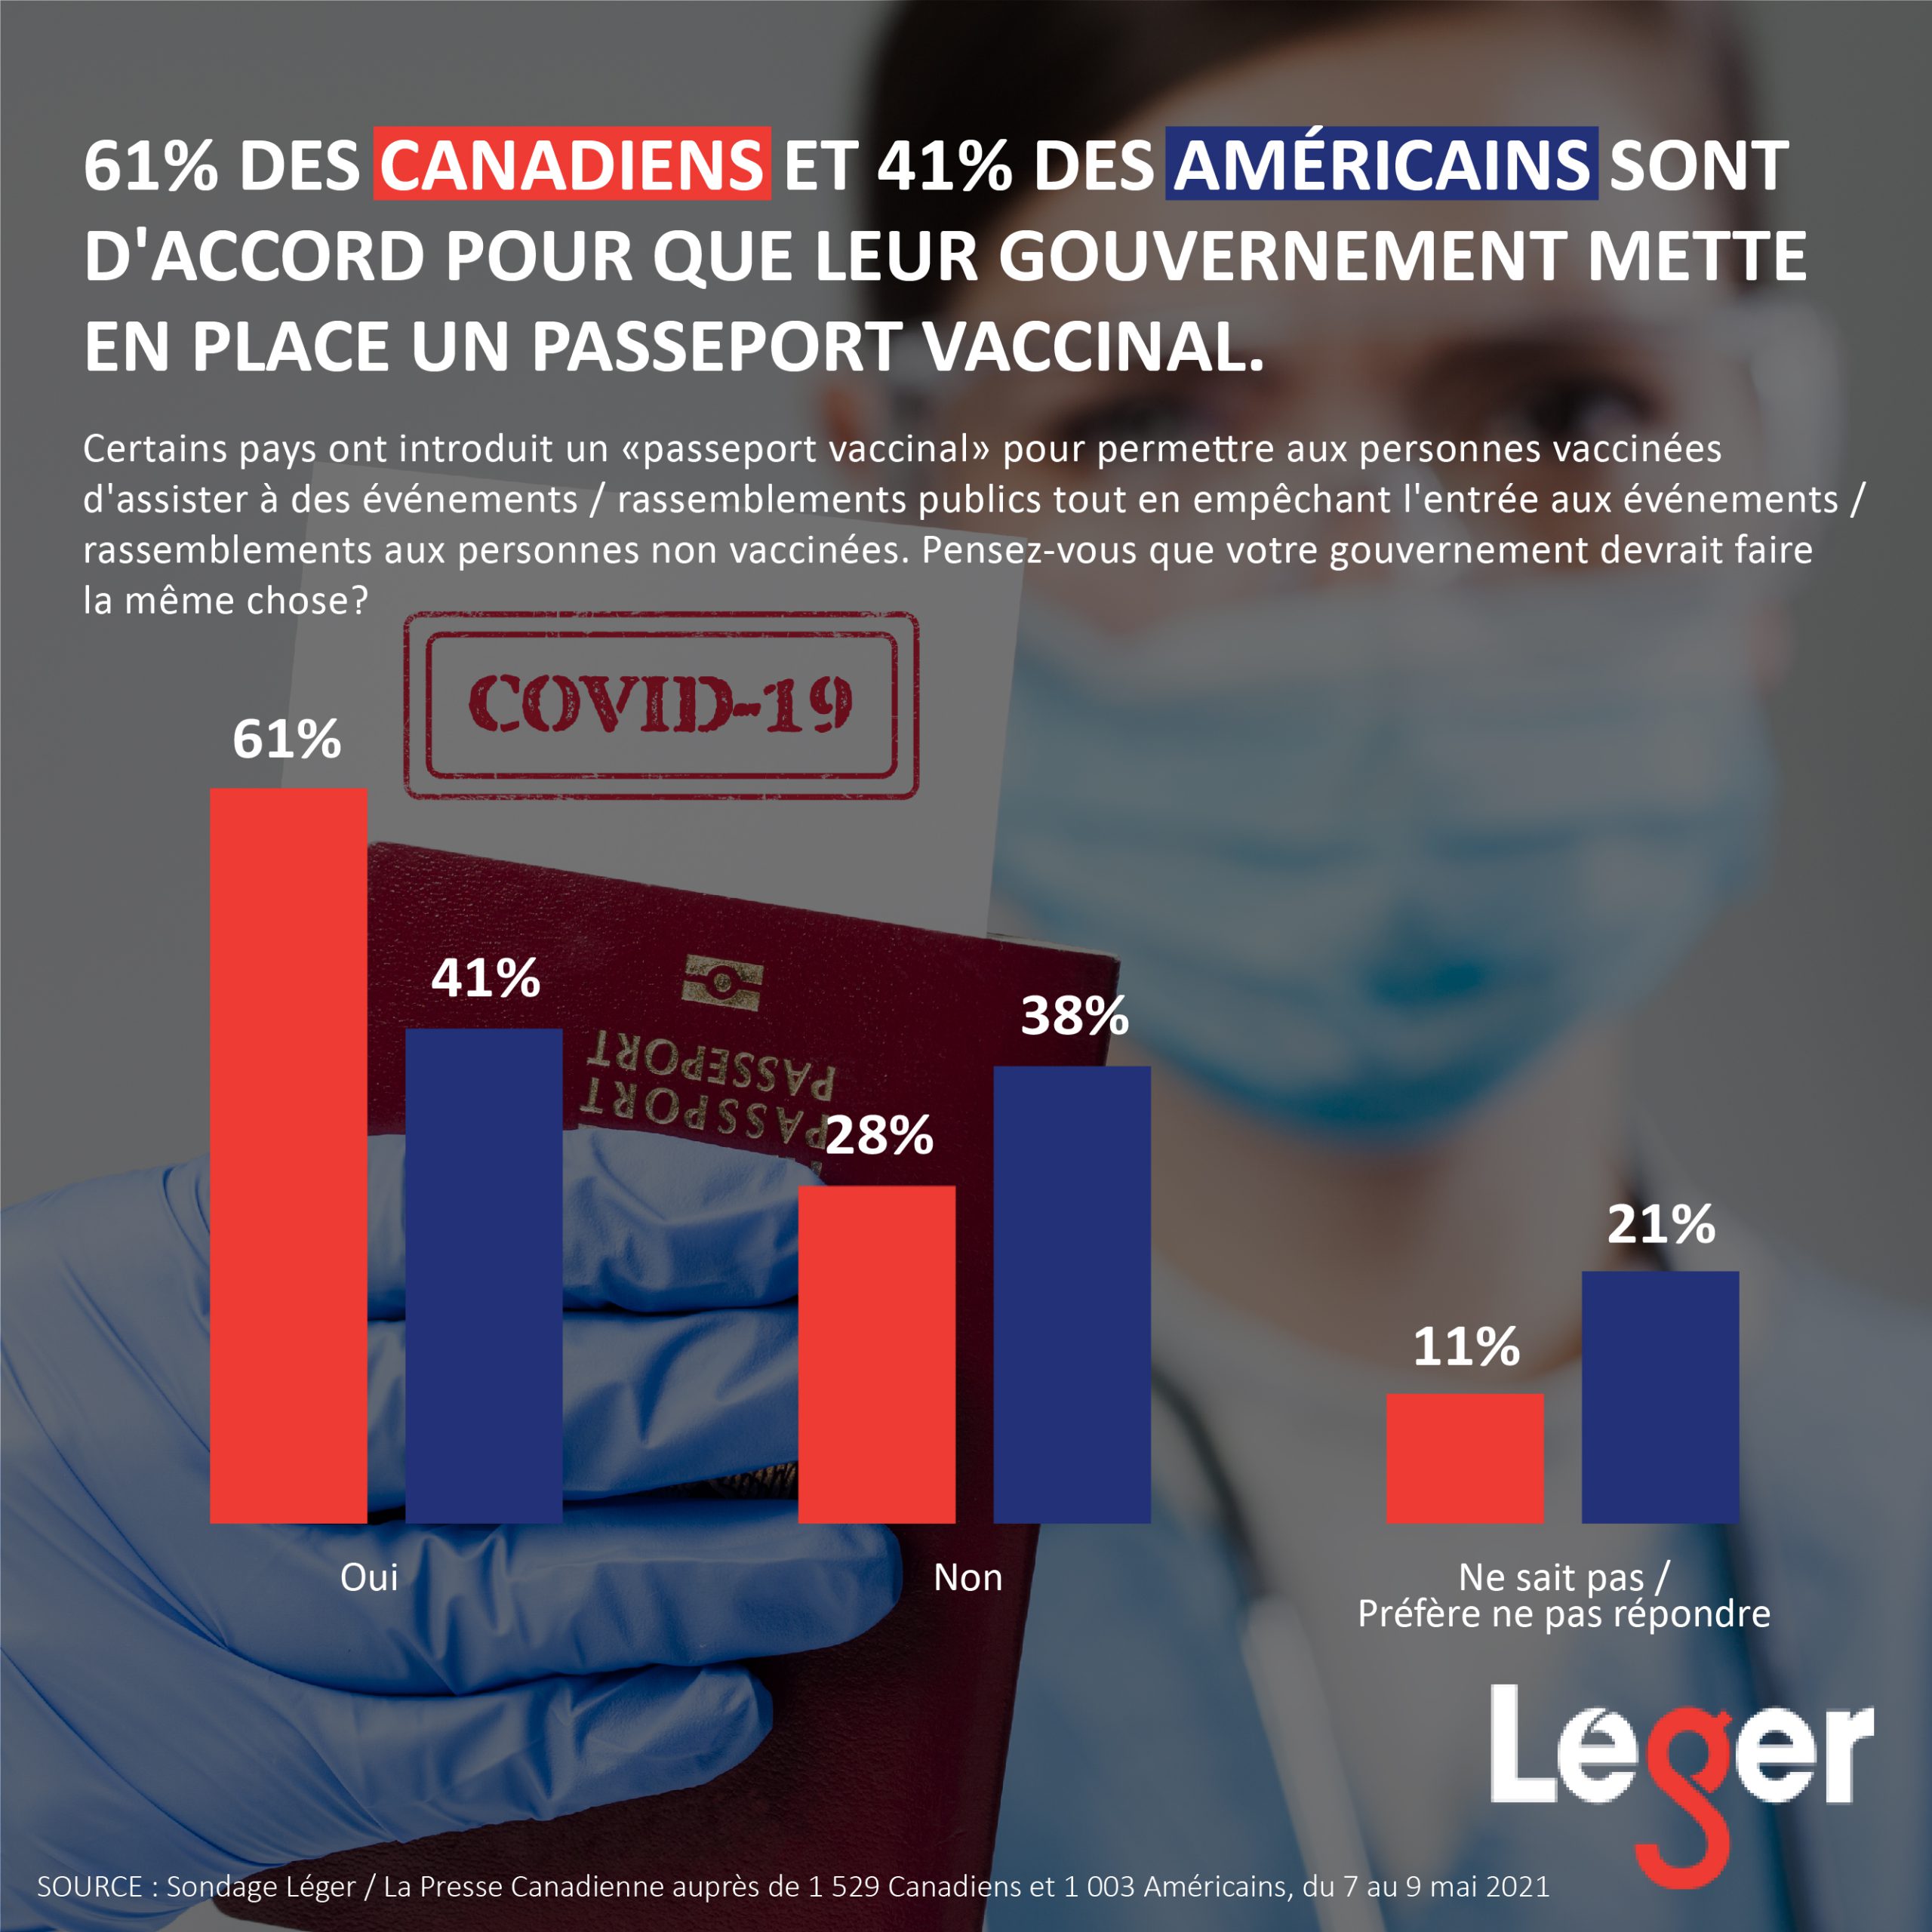 61% des Canadiens et 41% des Américains sont d'accord pour que leur gouvernement mette en place un passeport vaccinal.